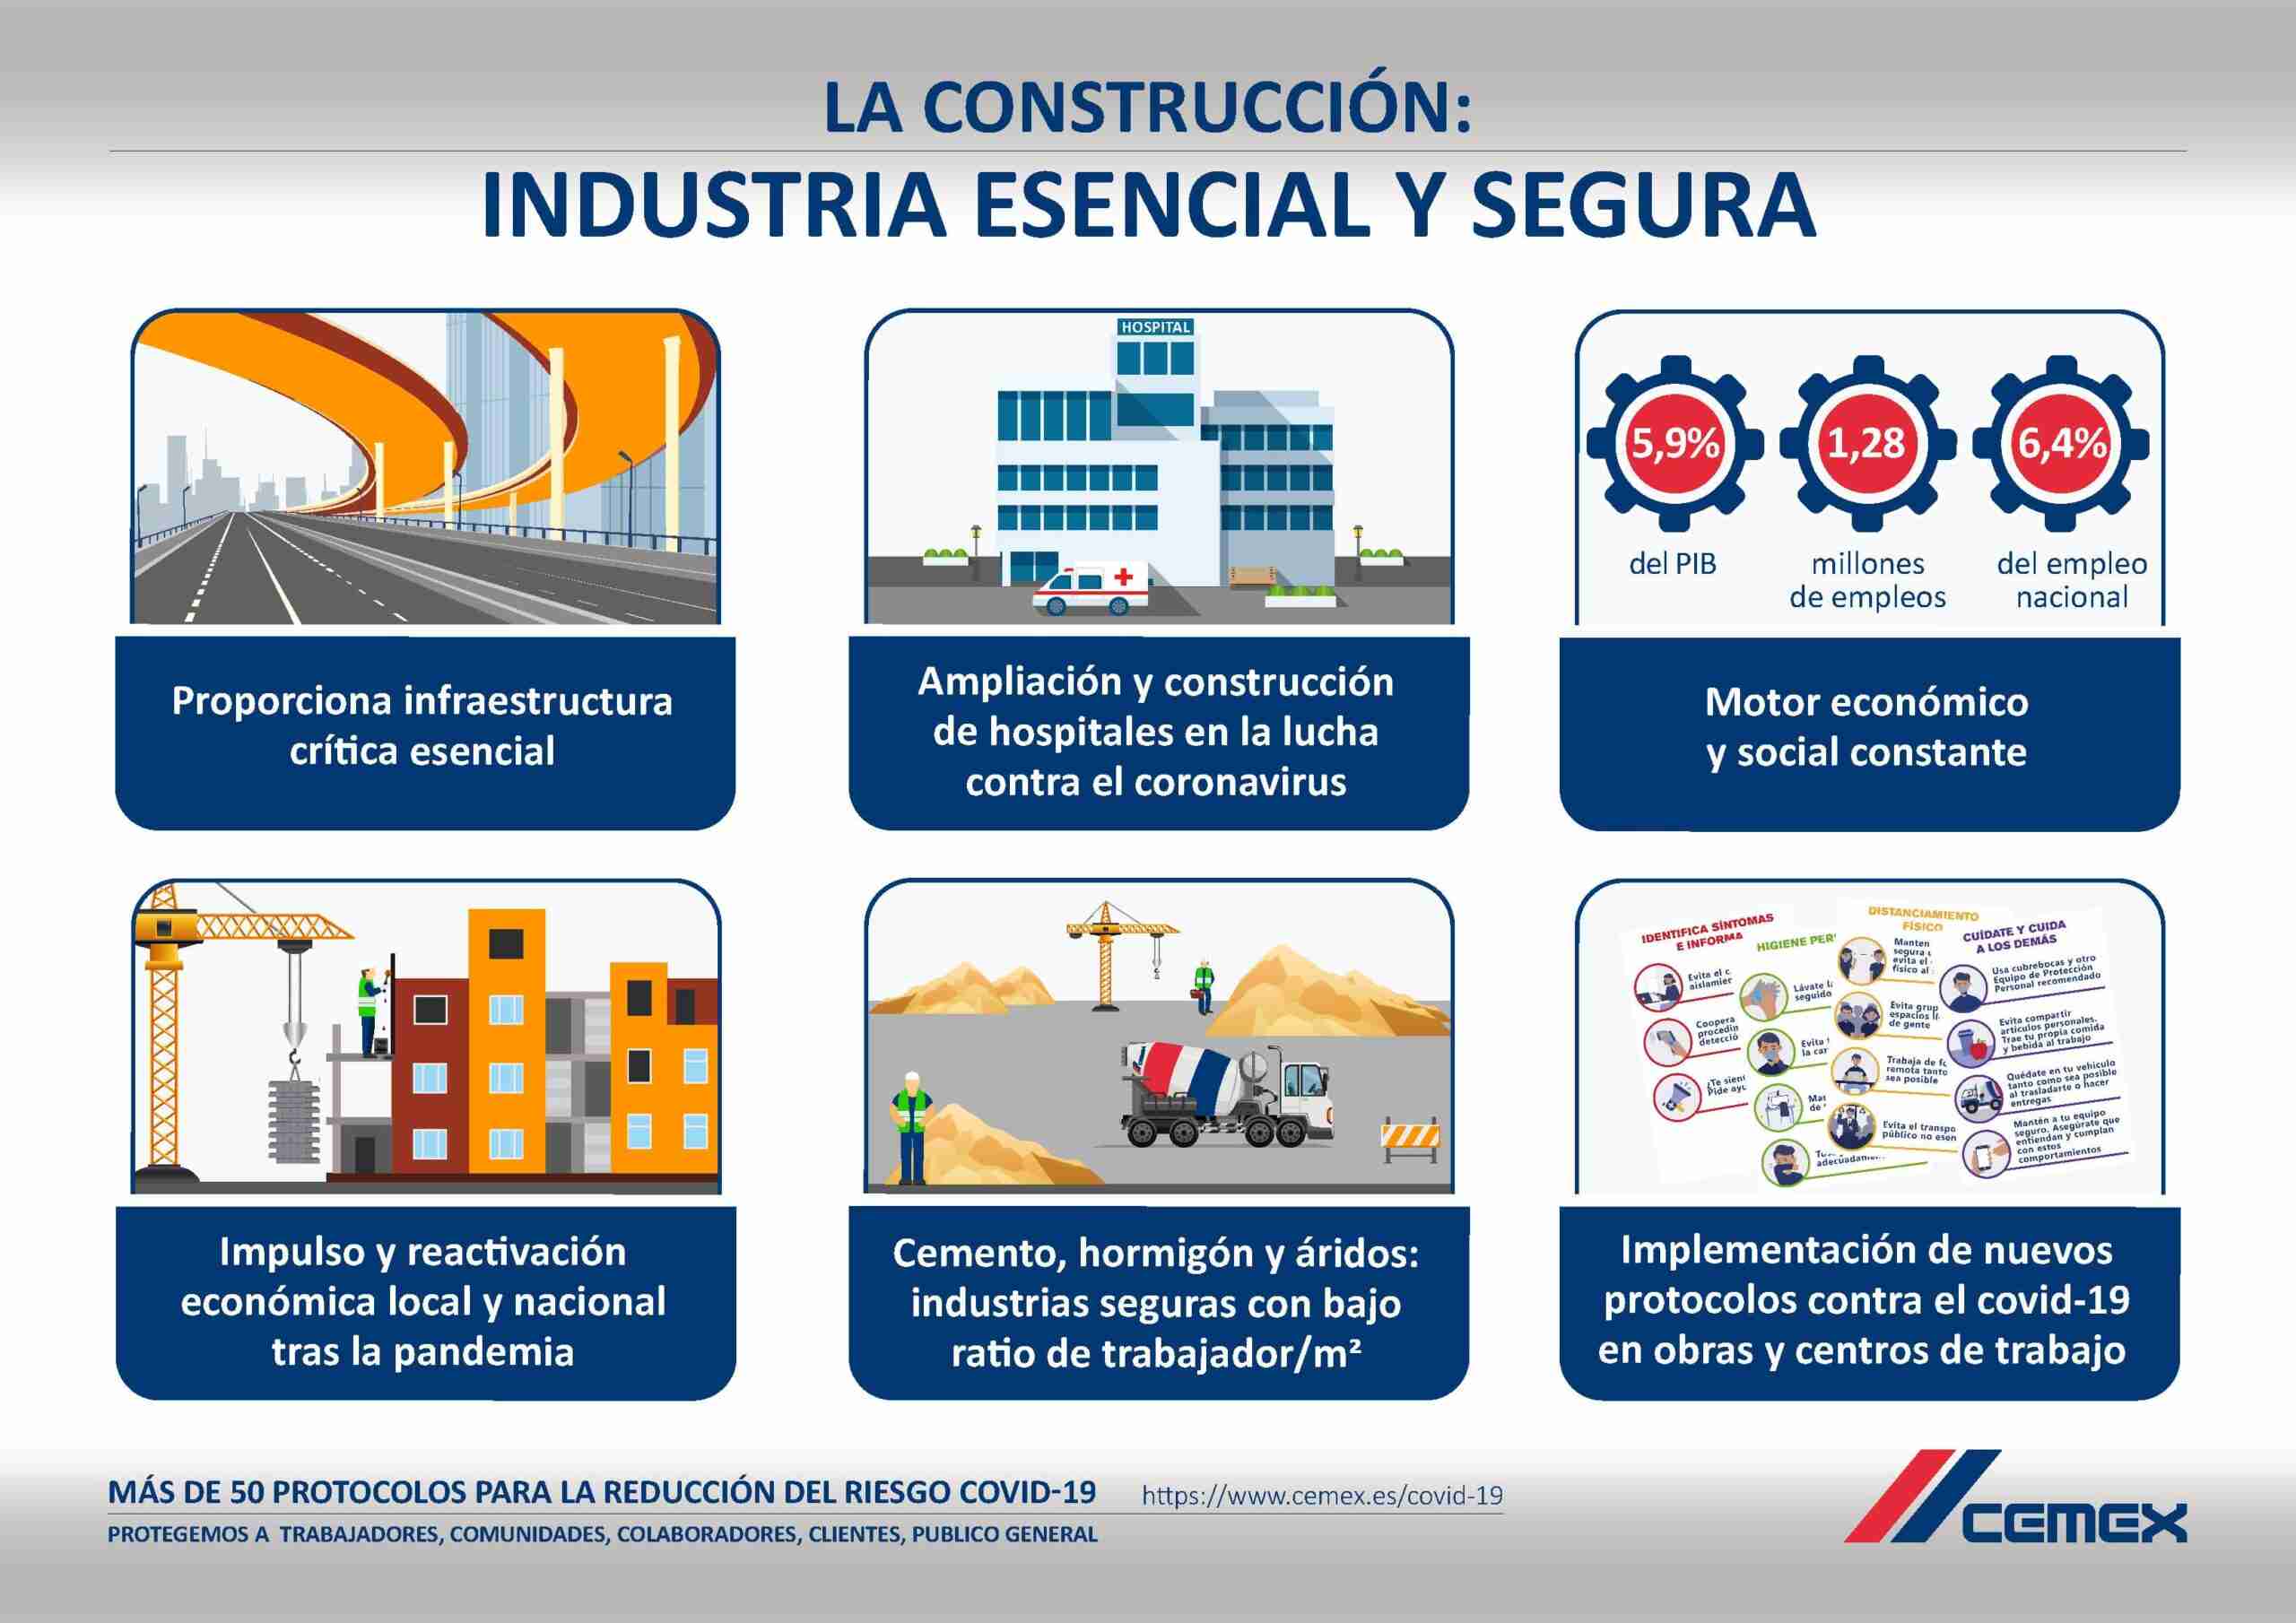 La industria de la construcción, motor de la recuperación económica 1